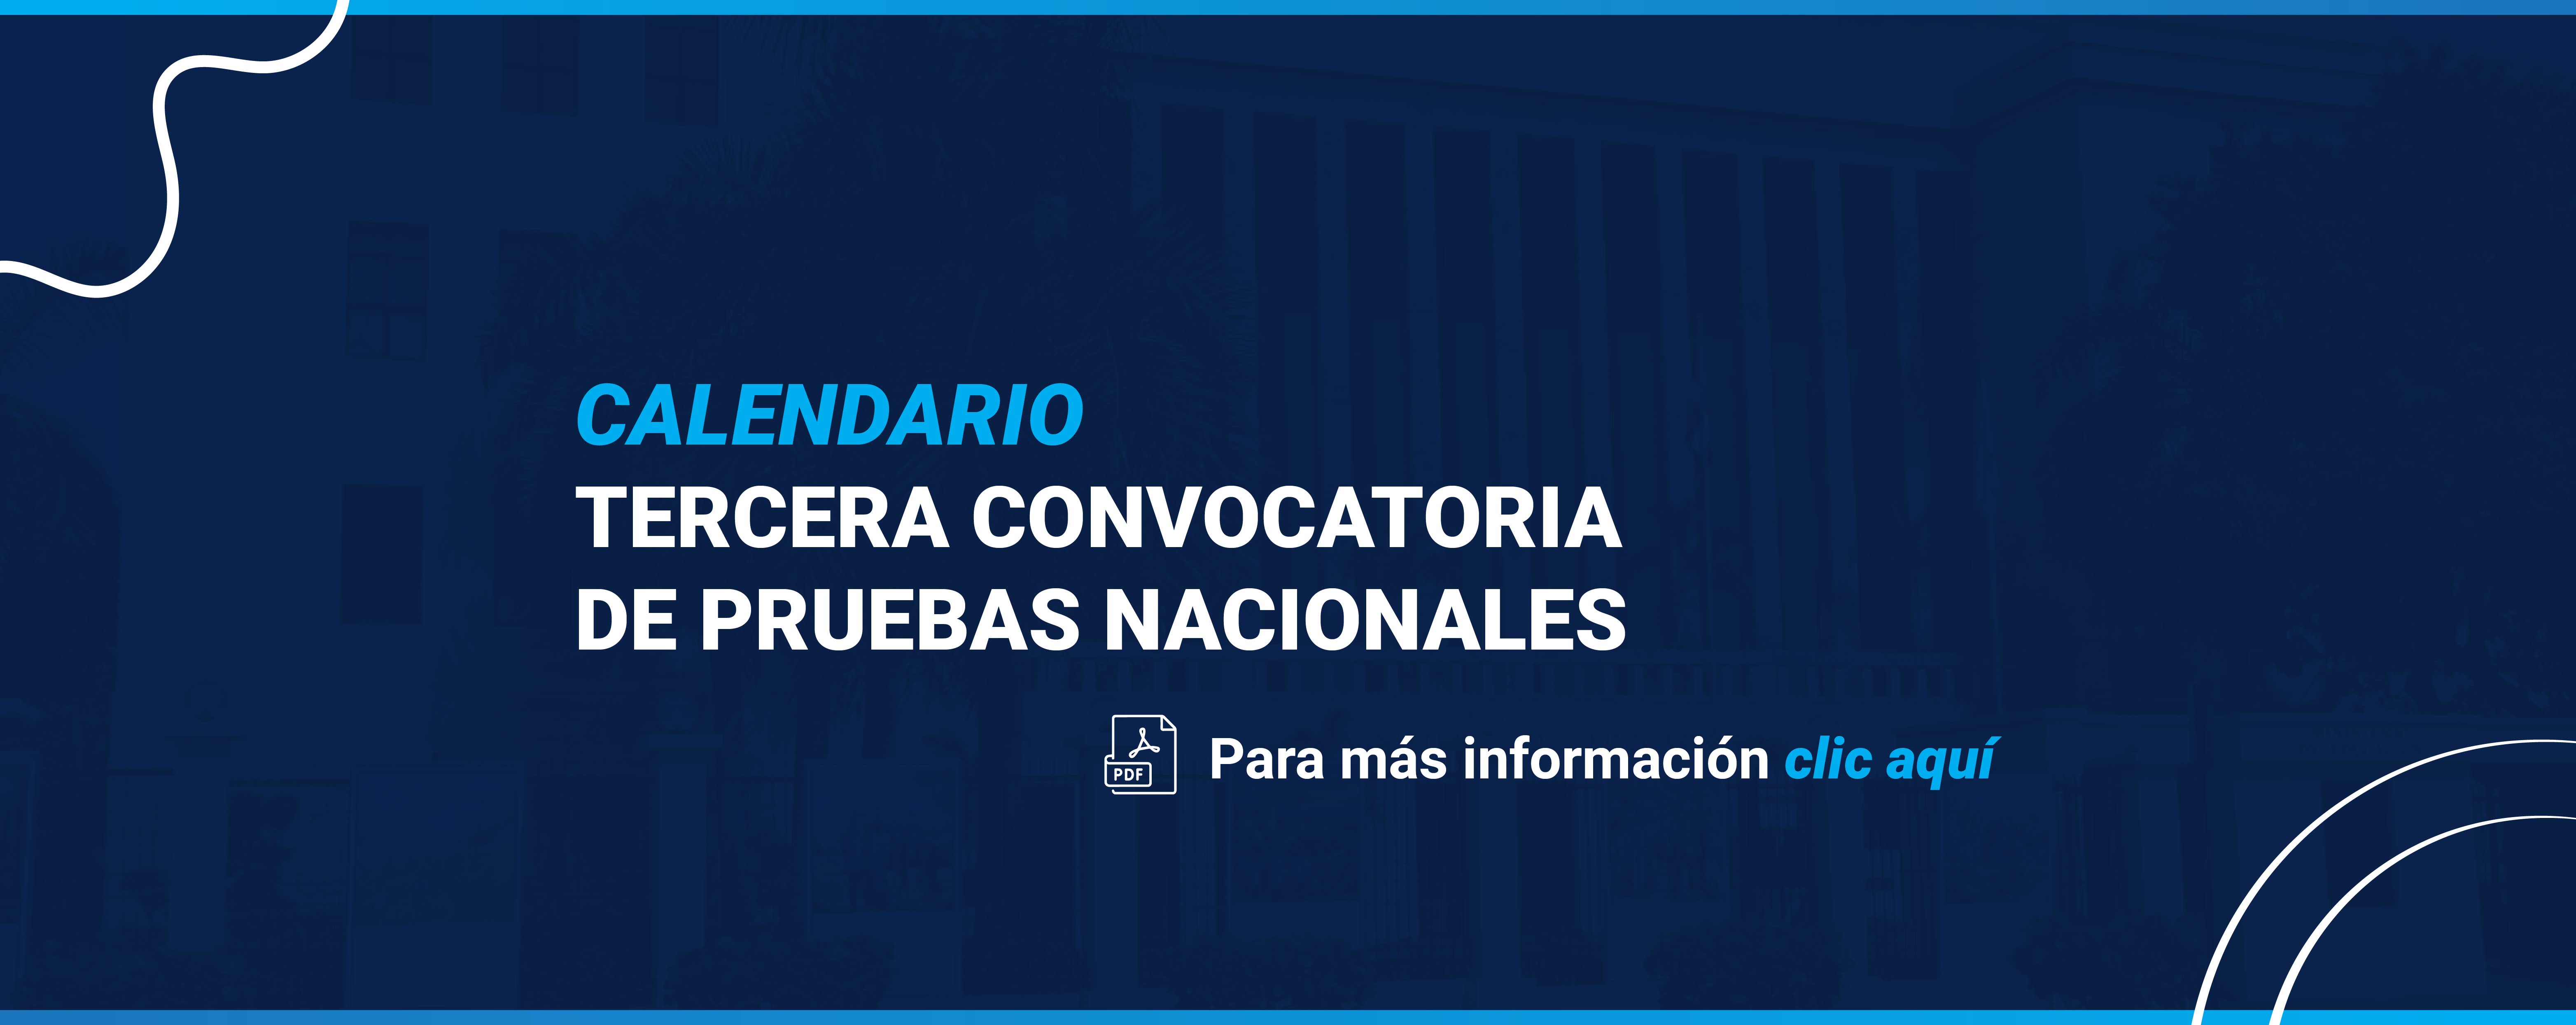 CALENDARIO TERCERA CONVOCATORIA DE PRUEBAS NACIONALES, Para más información, clic aquí